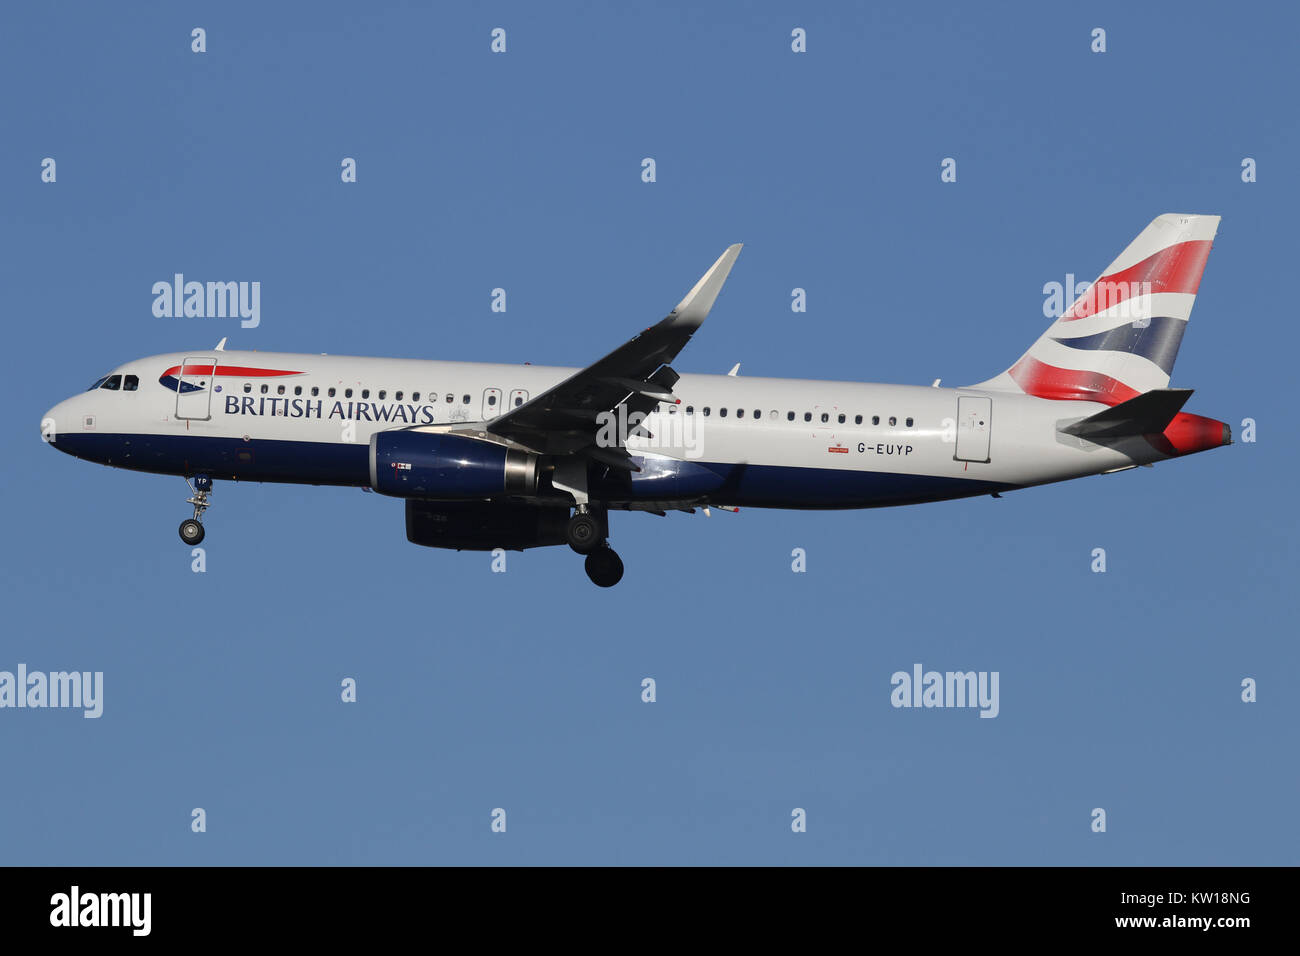 BRITISH AIRWAYS Stock Photo